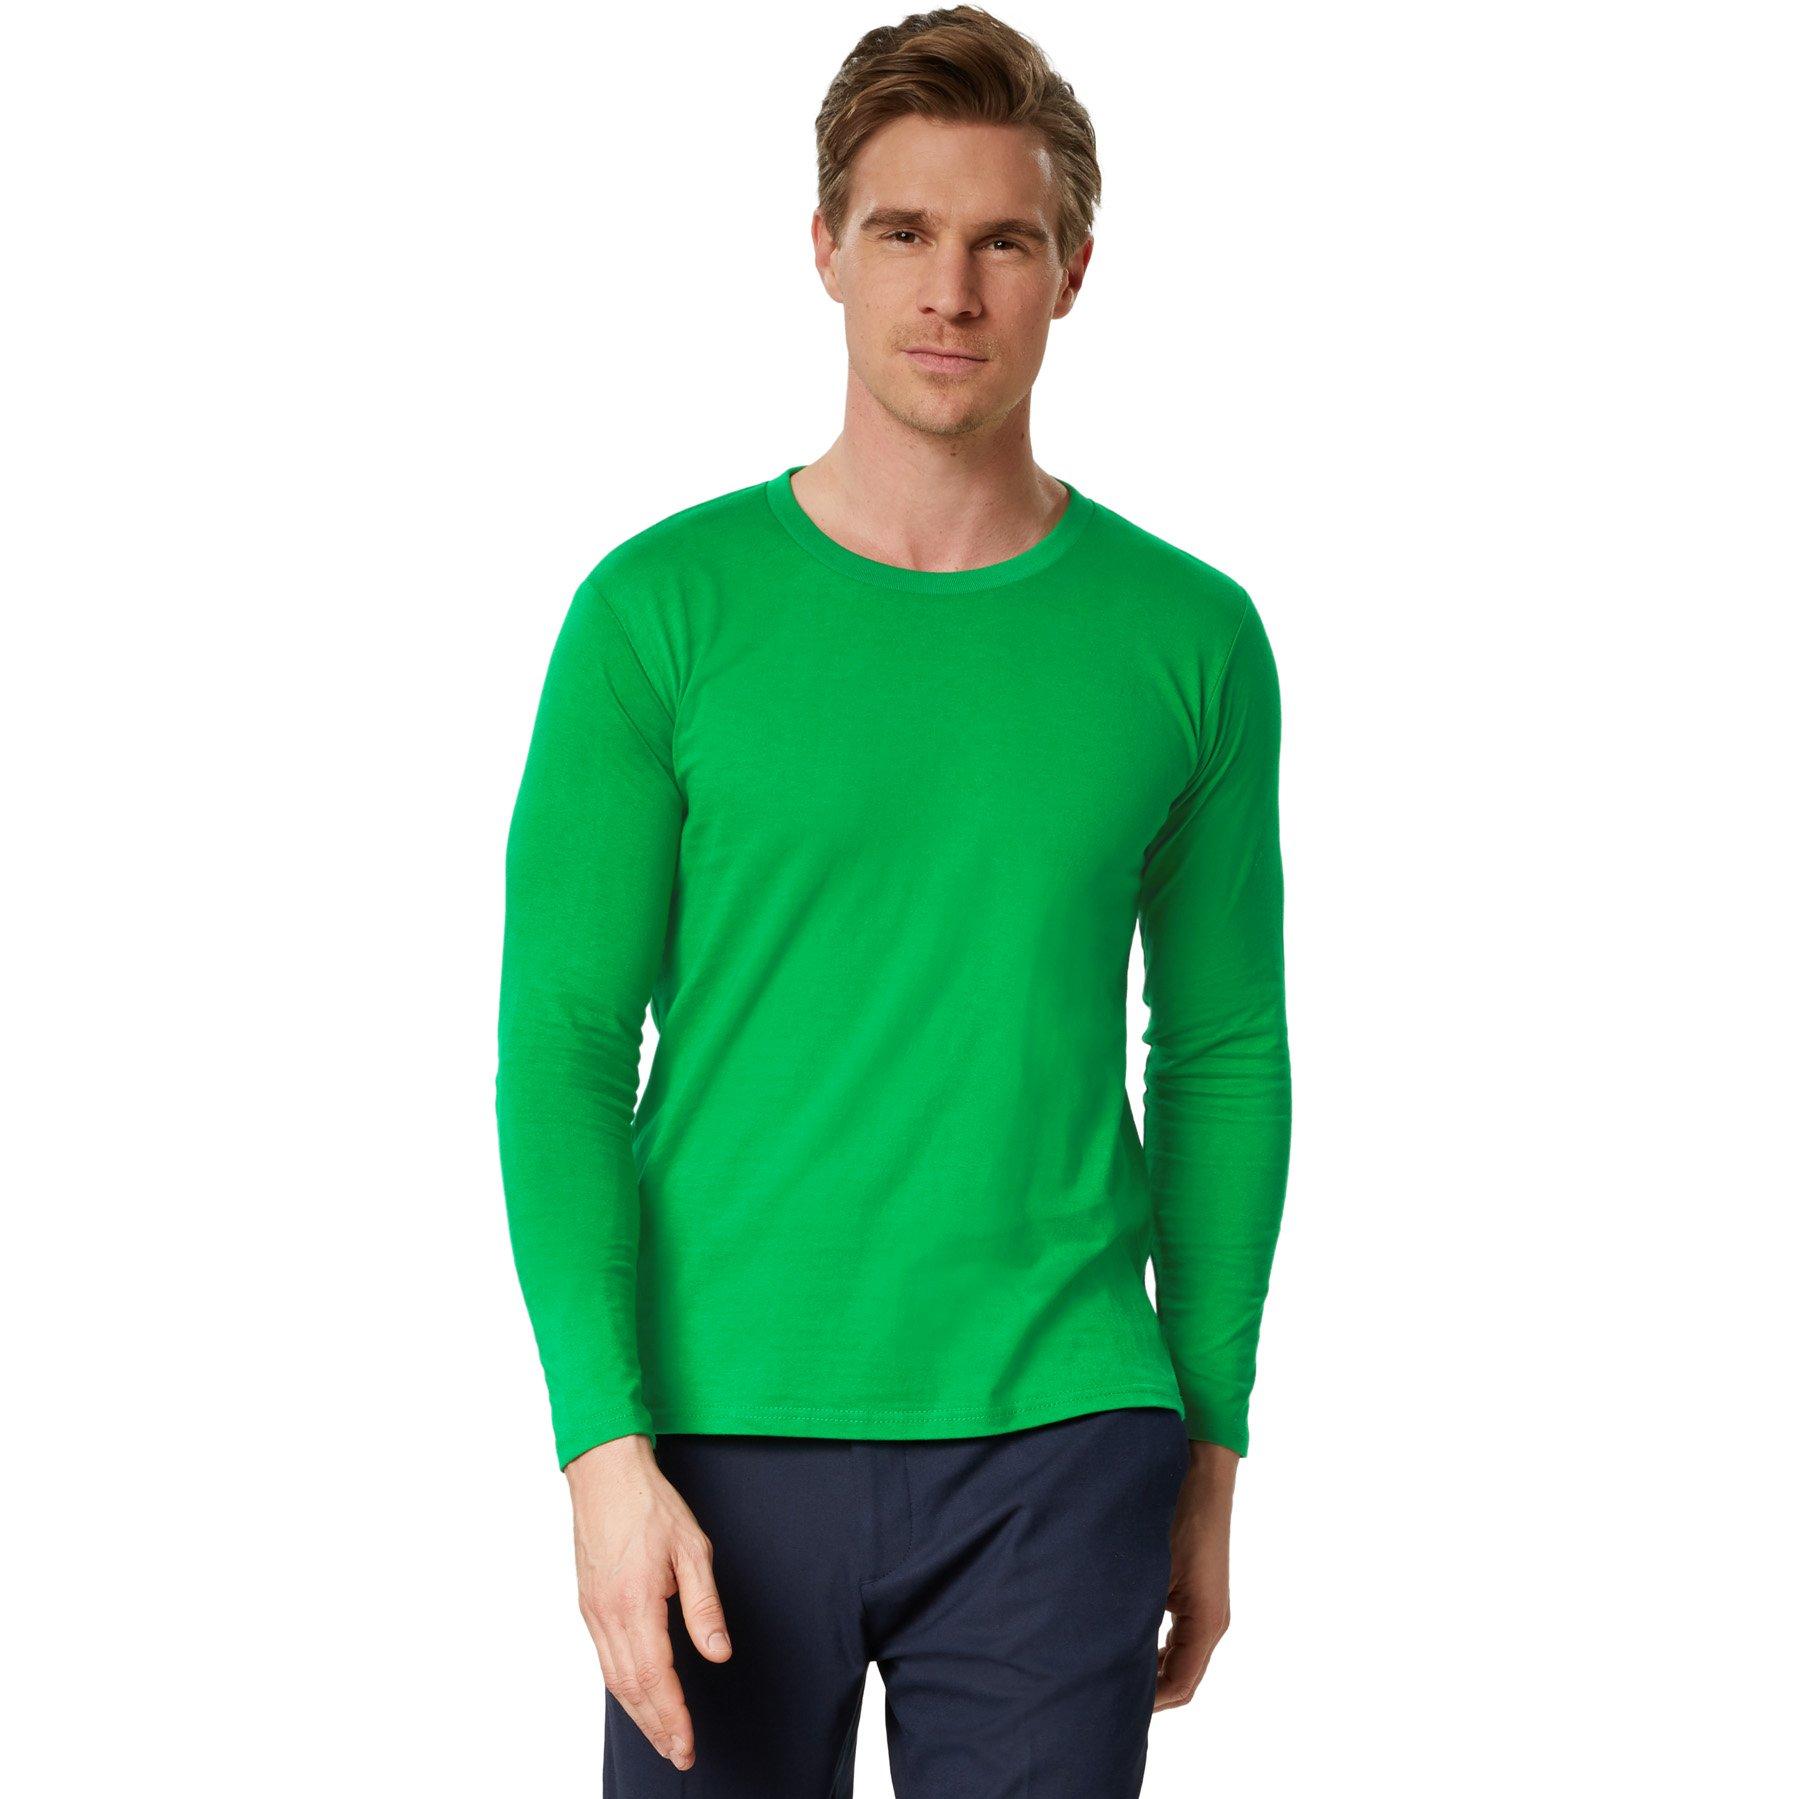 Langarm-shirt Männer Herren Grün XL von Tectake